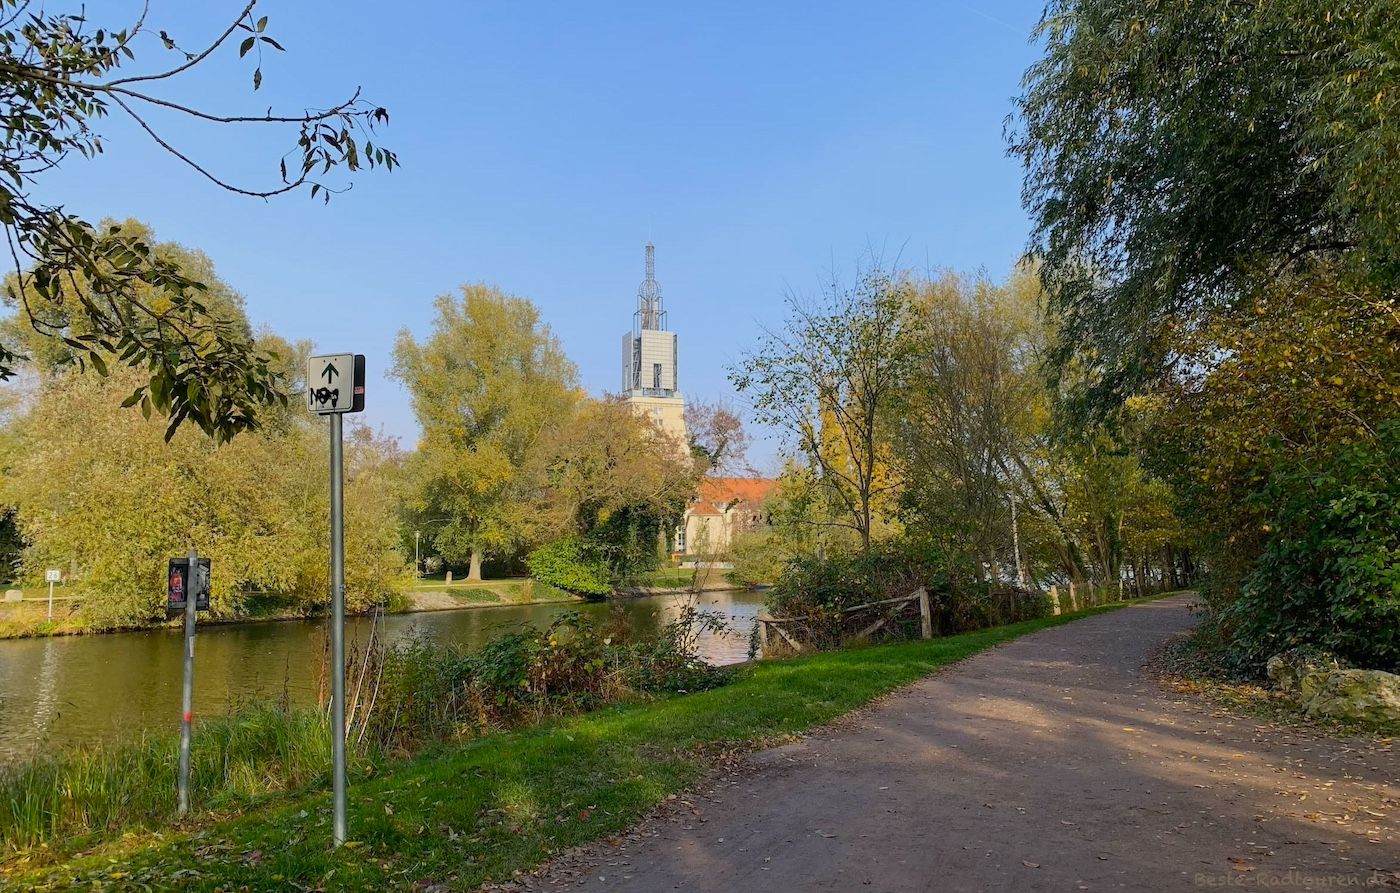 Foto vom Radweg im Nuthepark aus: Blick über die Potsdamer Havel, Turm vom Heilig-Geist-Park